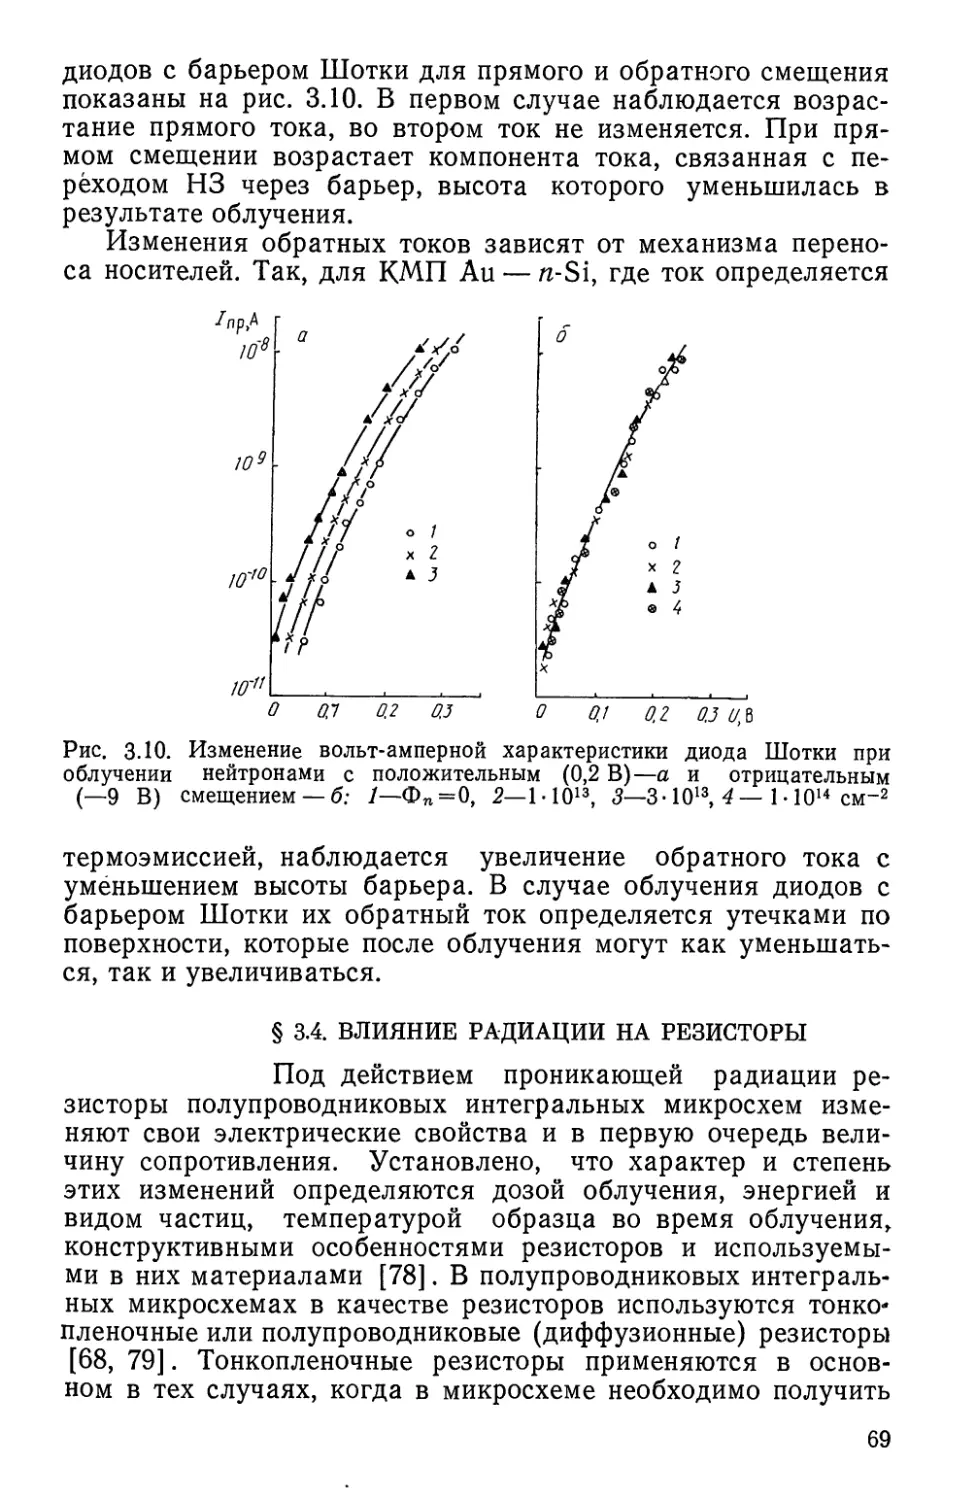 §3.4. Влияние радиации на резисторы